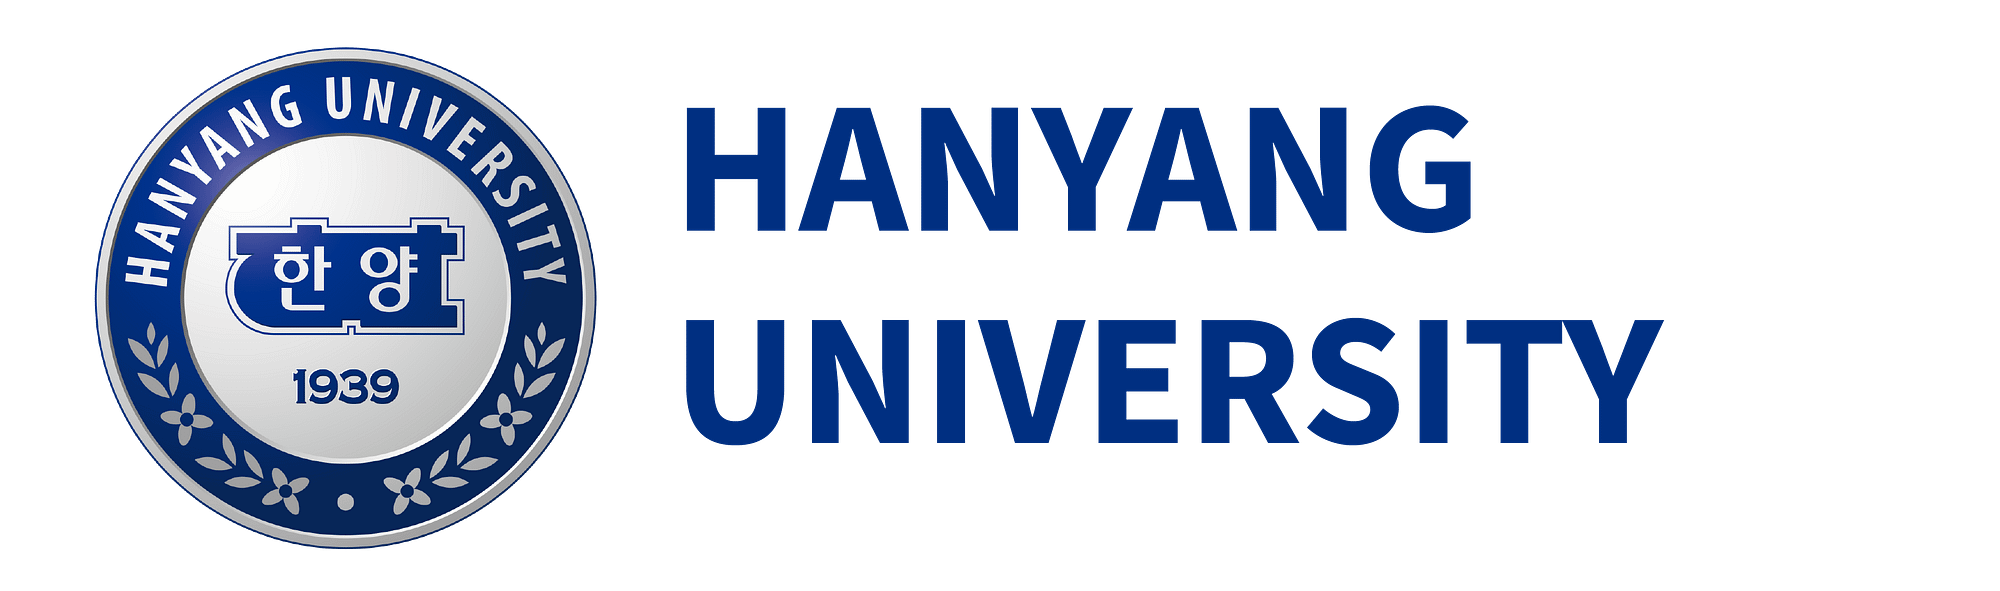 HanyangUniversity-logo